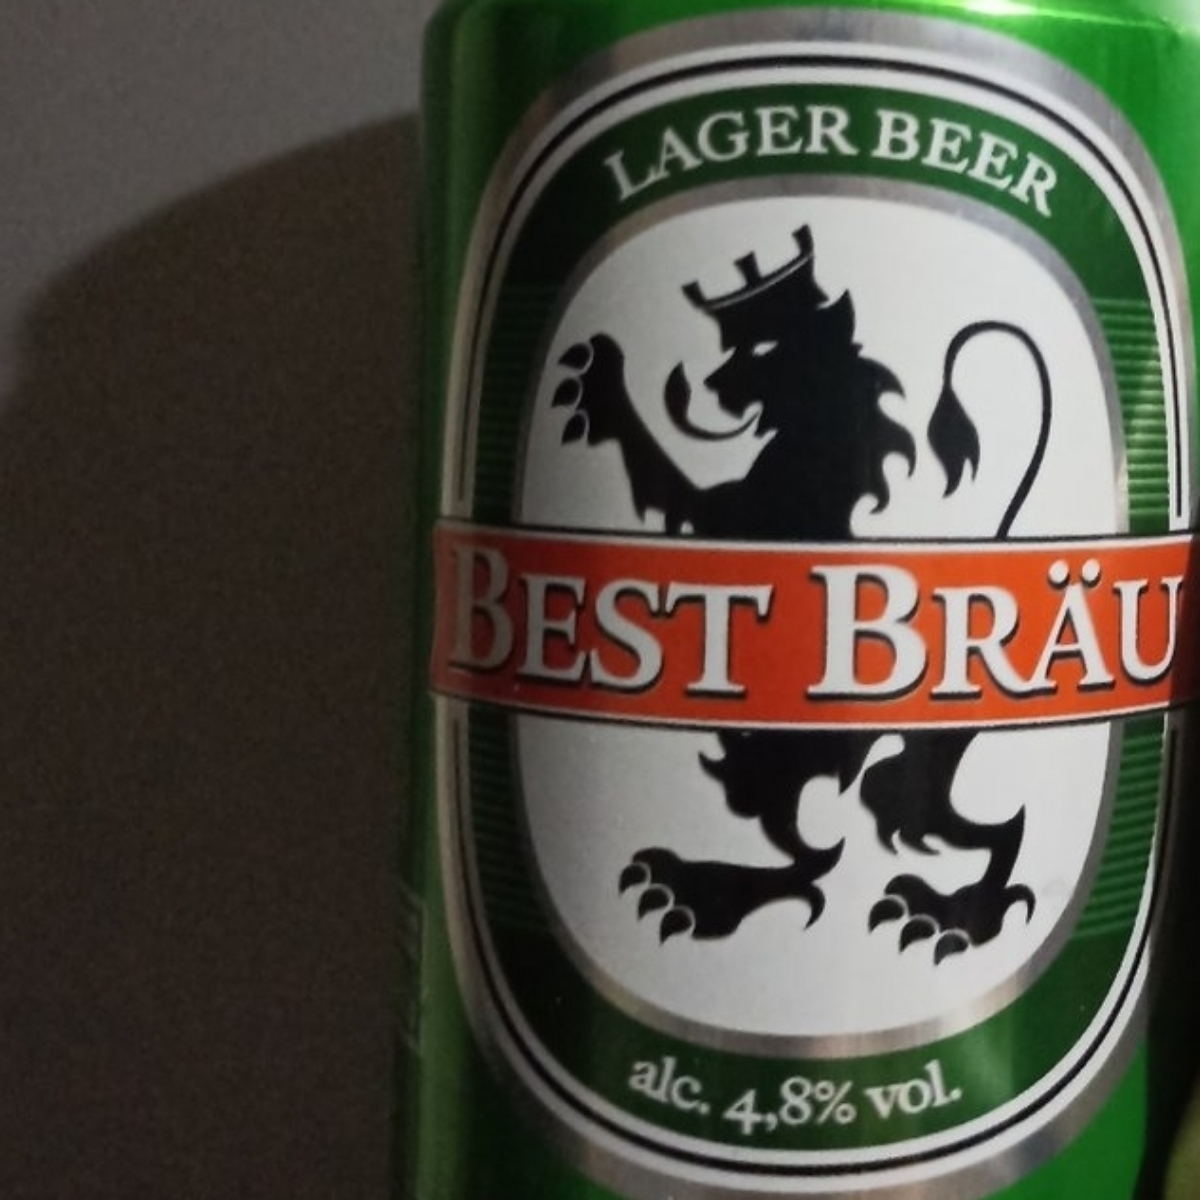 Best brau Lager Beer Reviews | abillion